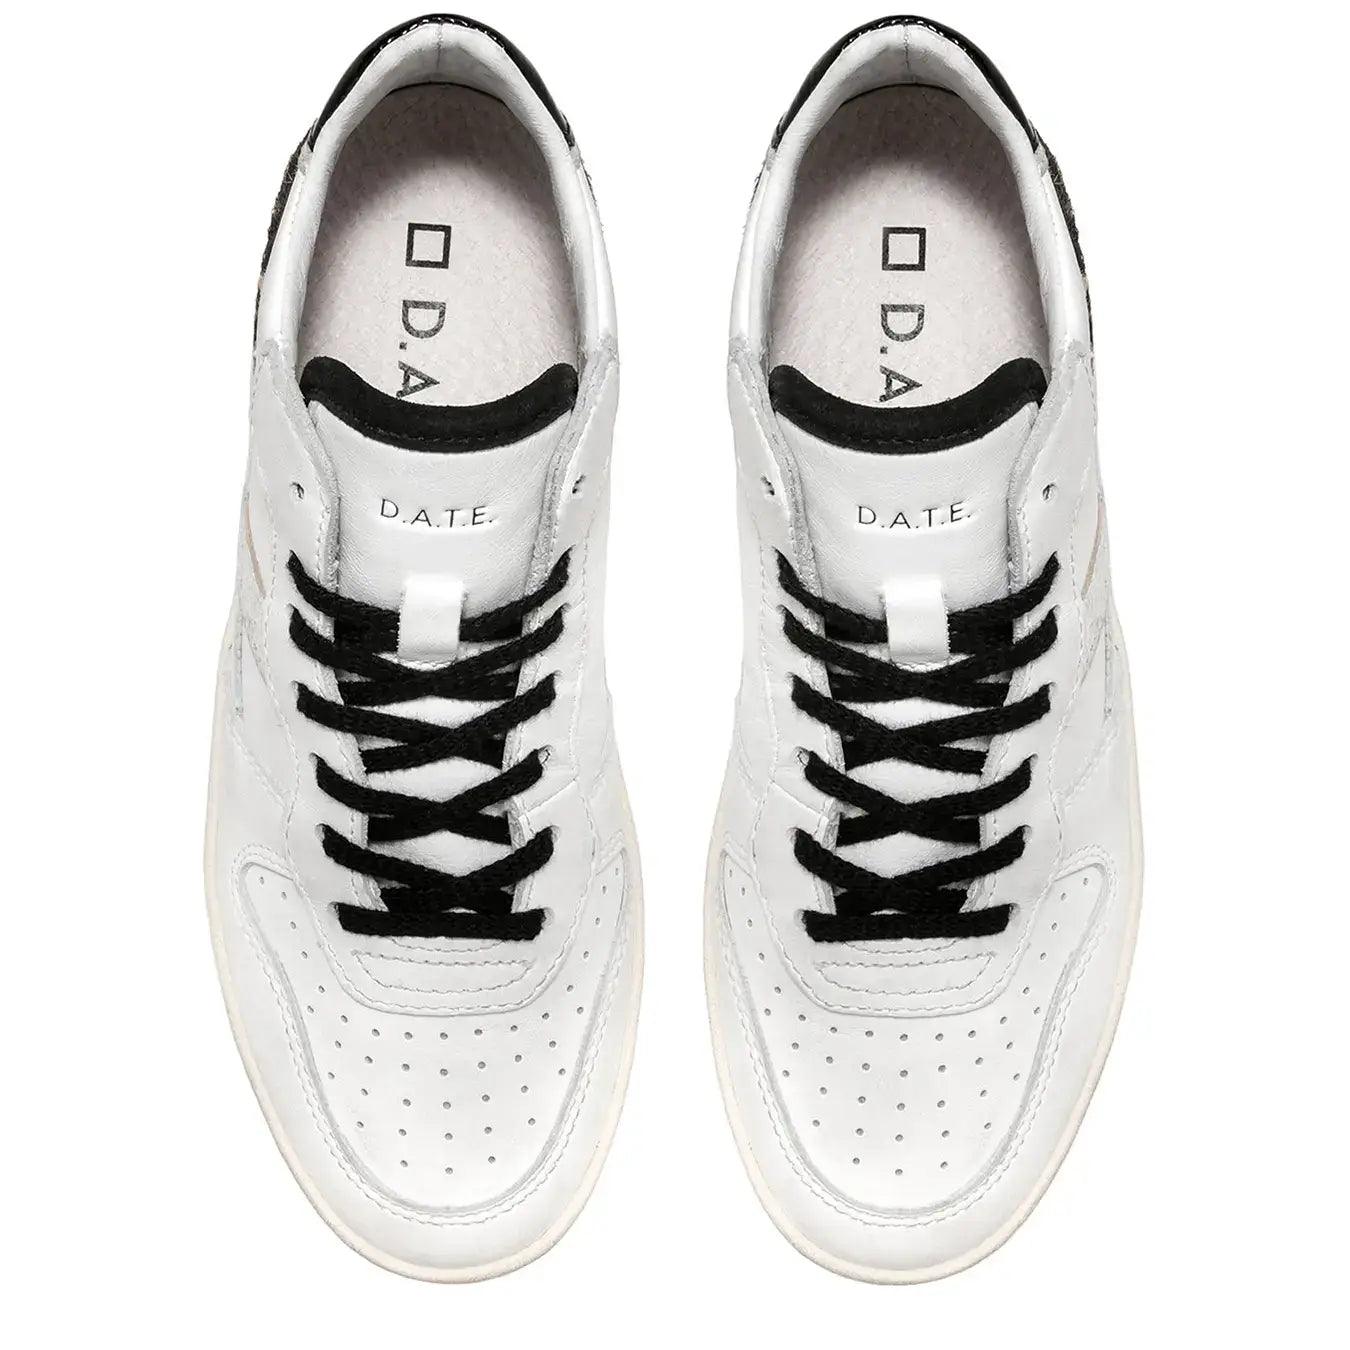 D.A.T.E. Scarpe Sneaker Court Donna, Pelle, Bianco, Animalier, lacci nero, soletta rimovibile | bassiniboutique.it